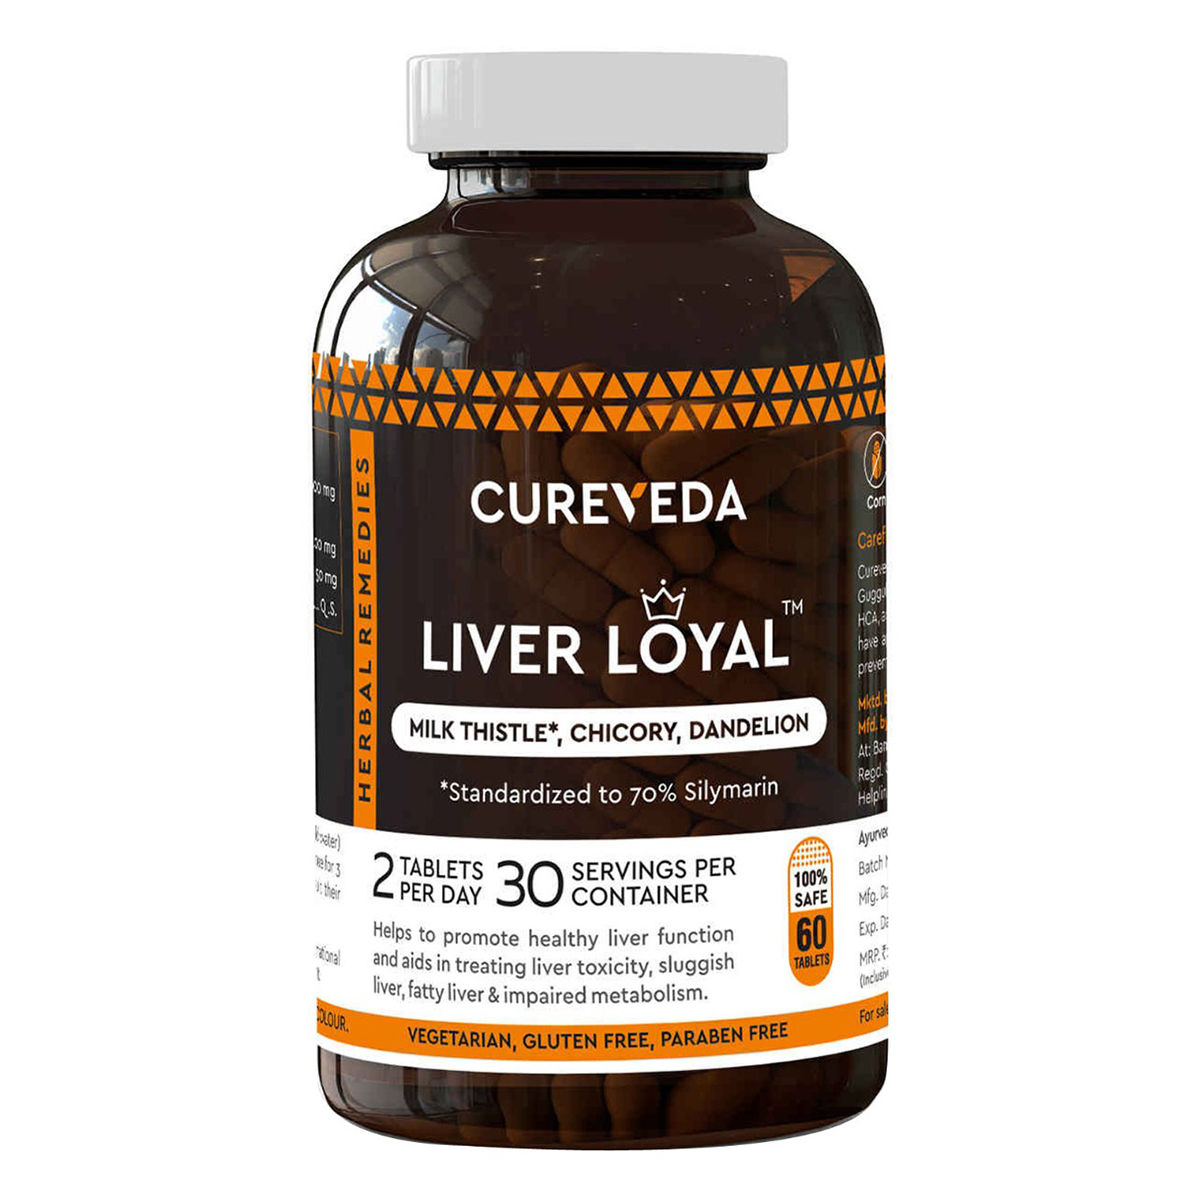 Buy Cureveda Liver Loyal, 60 Tablets Online